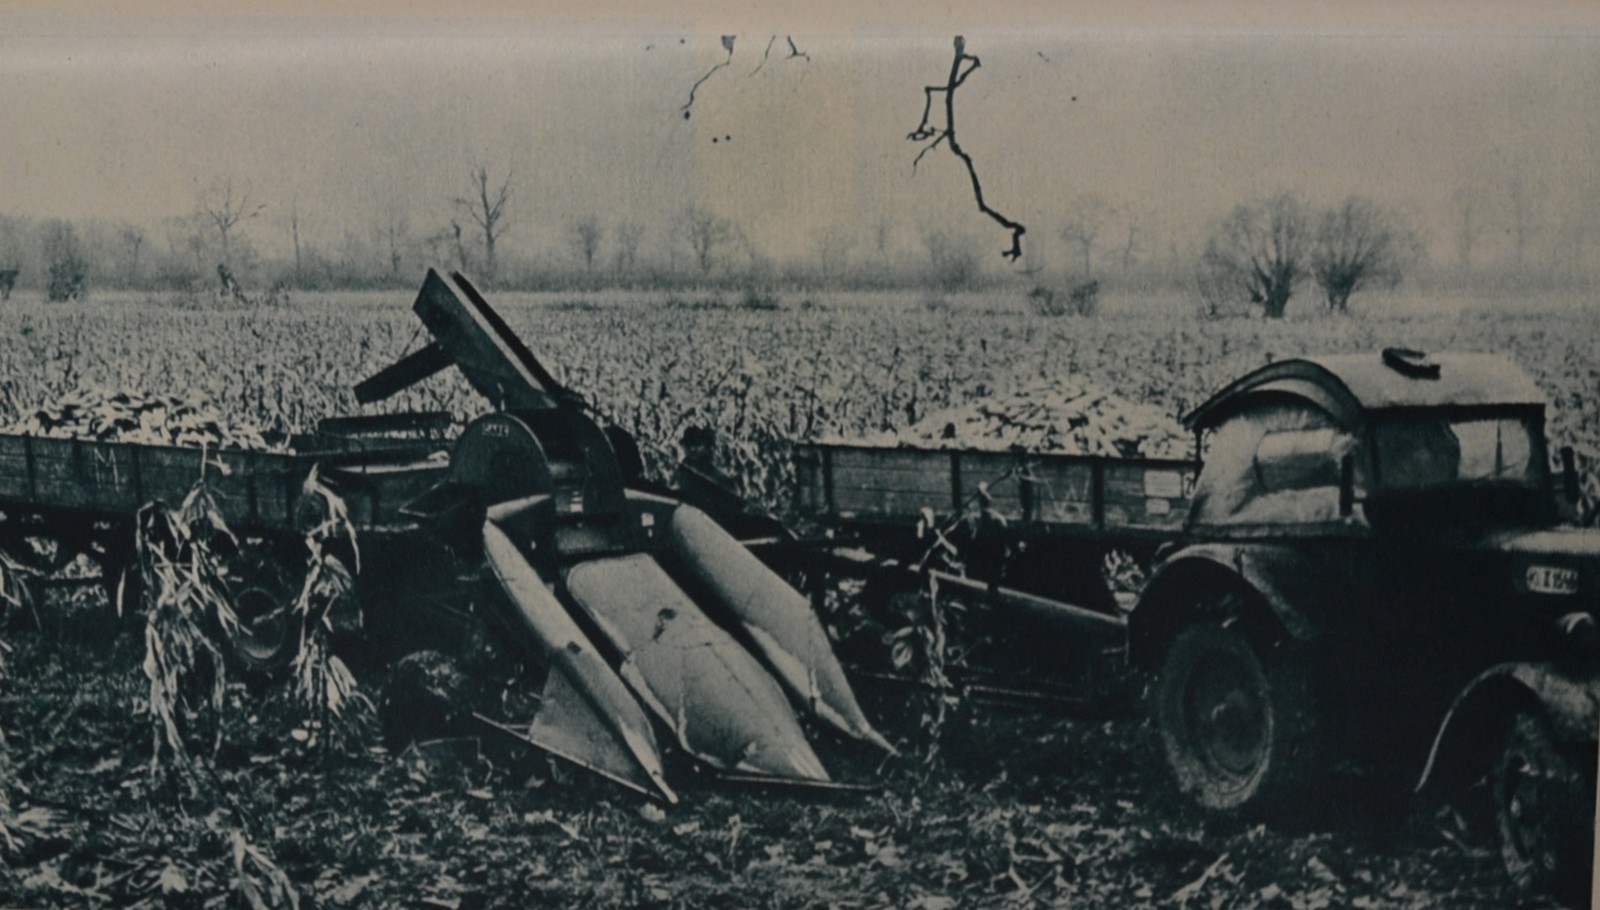 9. Kukorica-aratógép, 1956